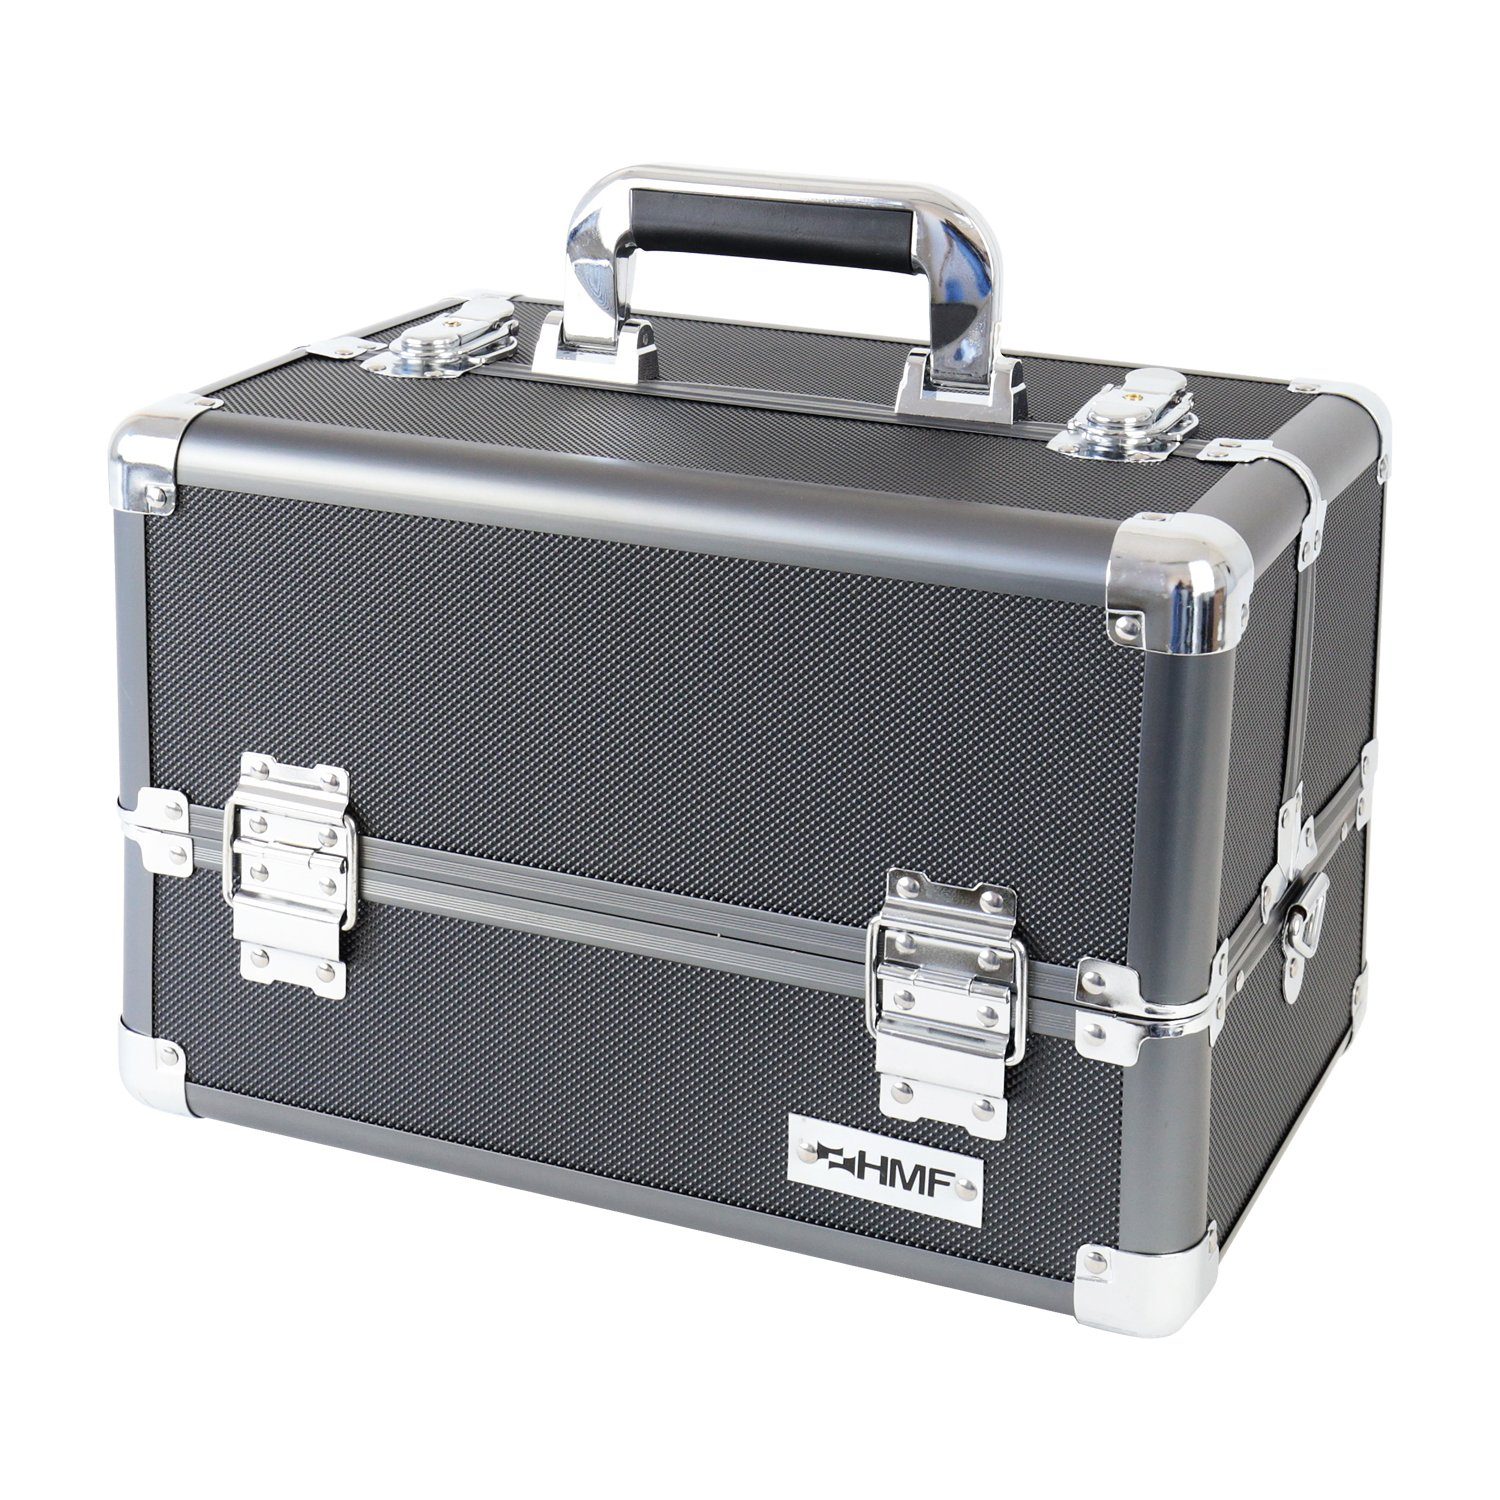 HMF Kosmetikkoffer multifunktionaler Utensilien Koffer, Schminkkoffer, verstellbare Trennwände, 33 x 22,5 x 24 cm, schwarz